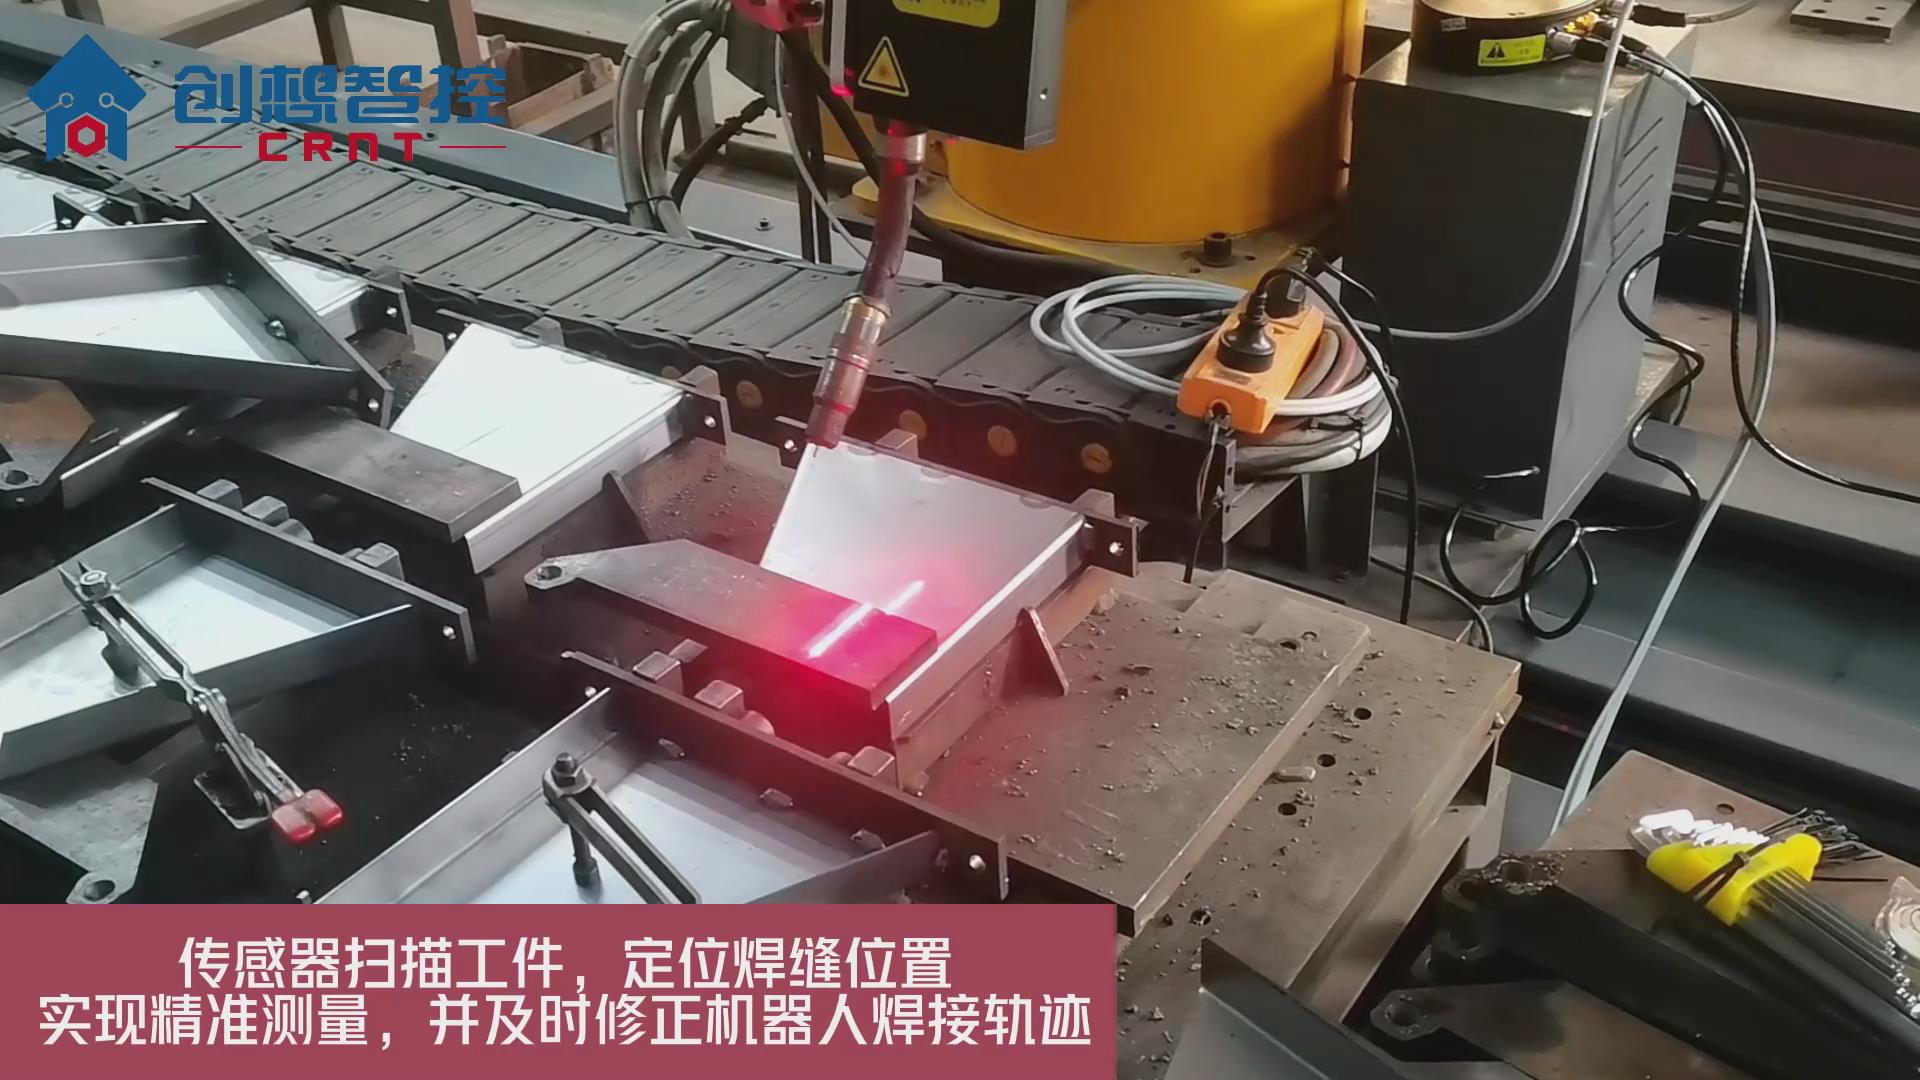 创想焊缝跟踪系统适配埃斯顿机器人进行智能识别焊接的应用